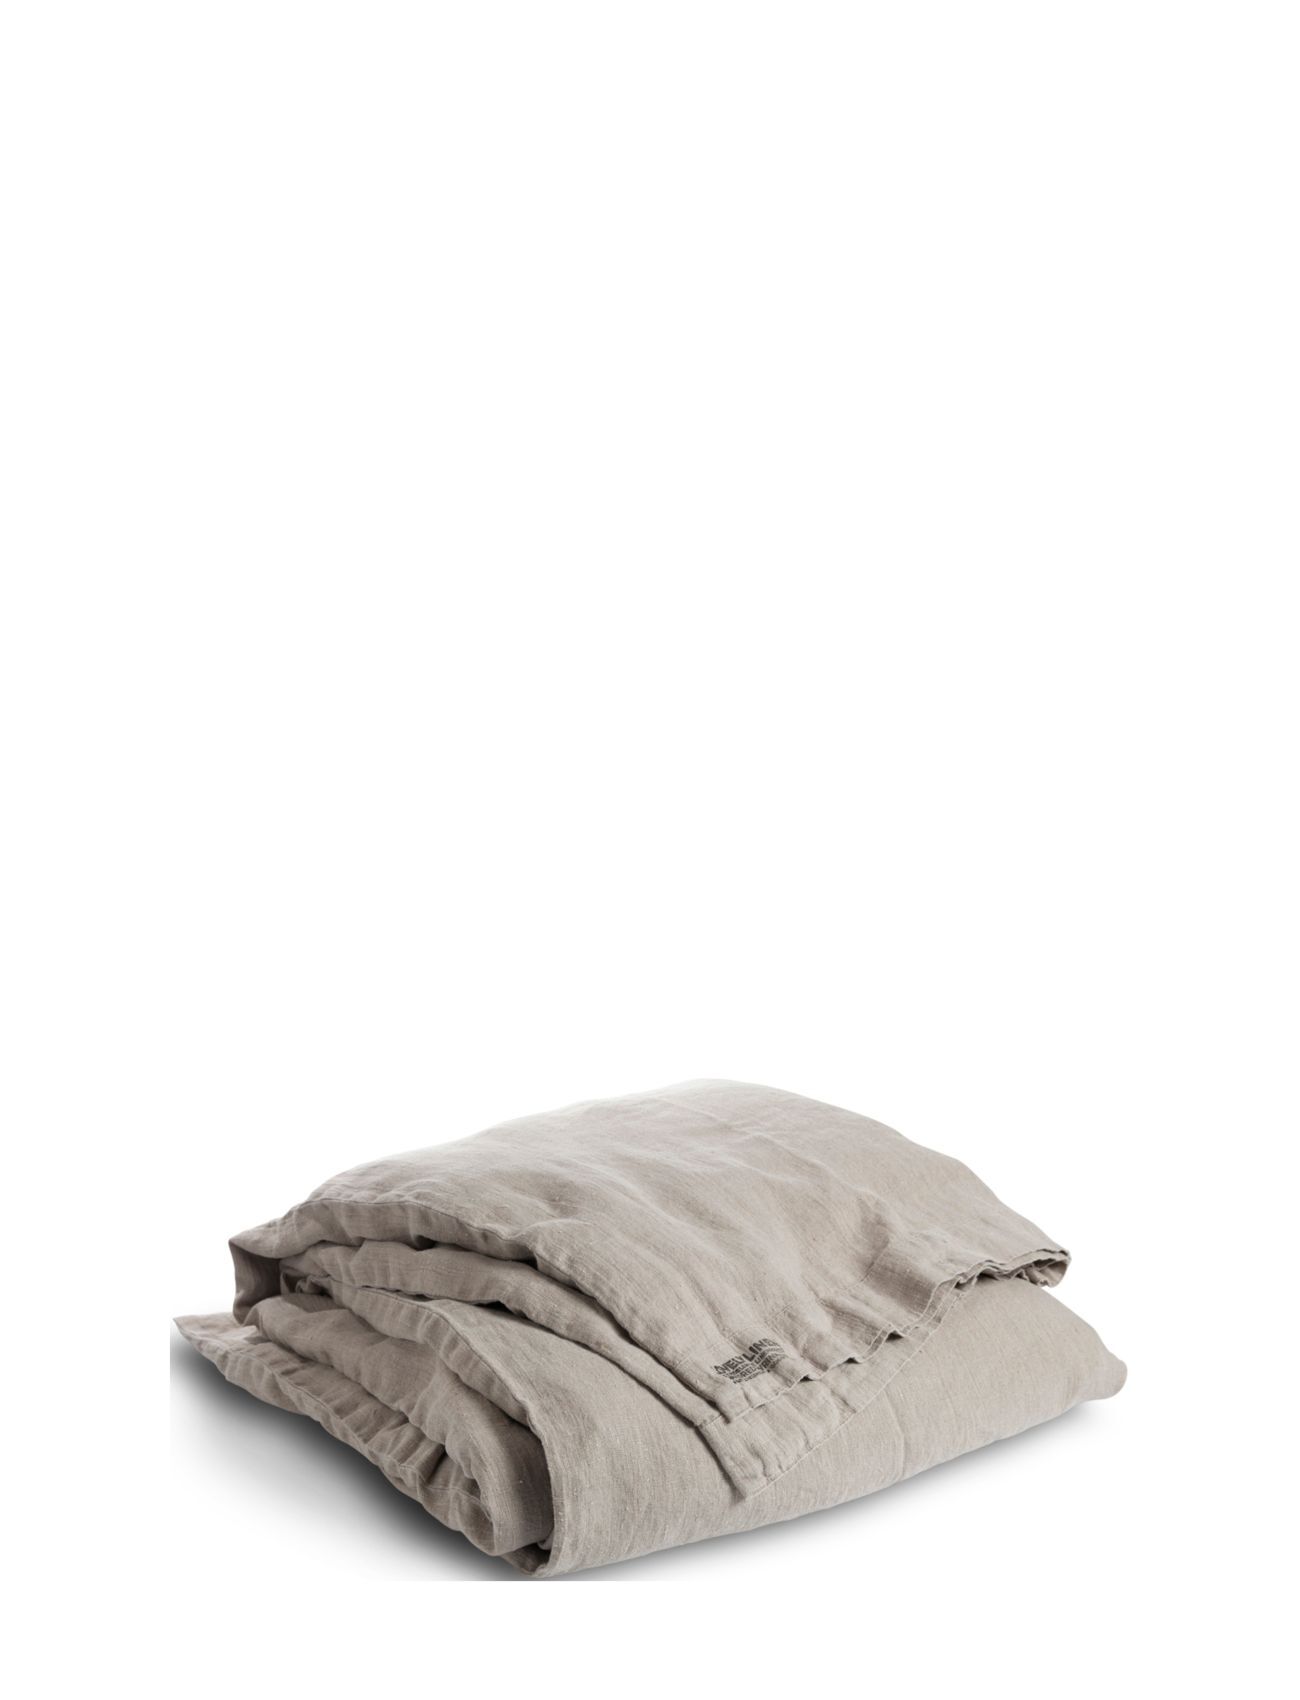 Lovely Linen Lovely Duvet Cover Home Textiles Bedtextiles Duvet Covers Beige Lovely Linen